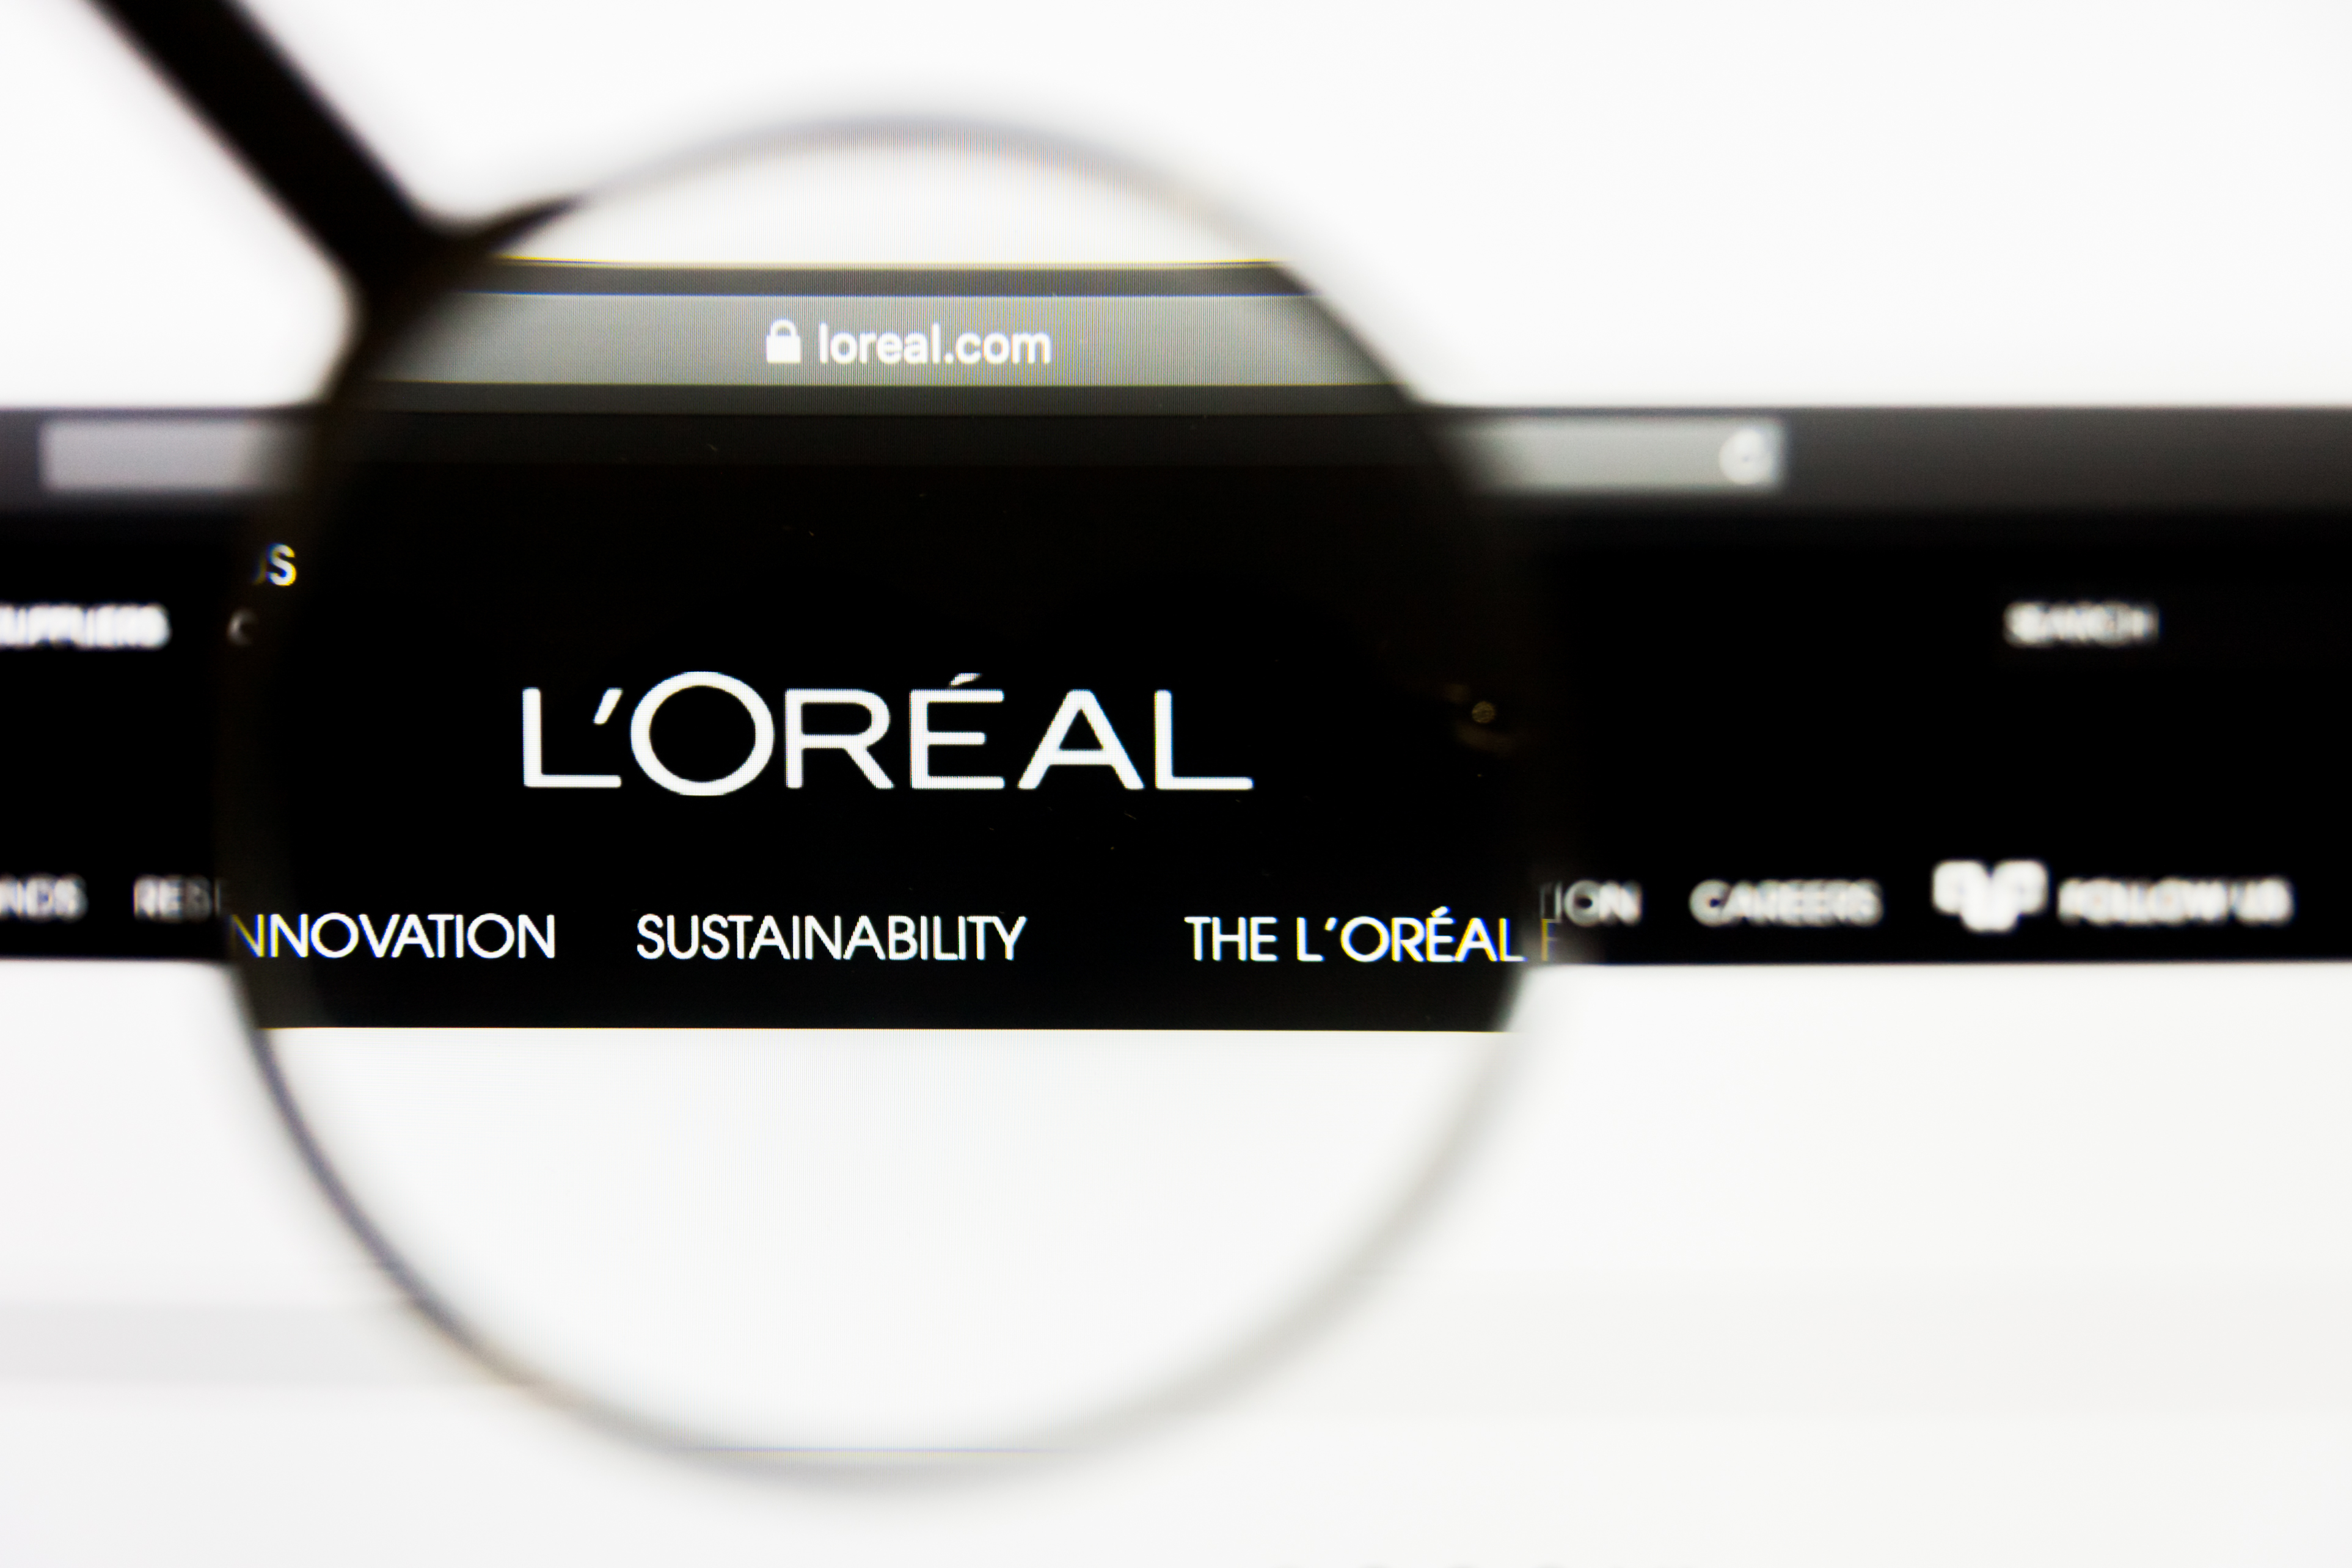 L’Oréal aposta no e-commerce para ampliar rede de clientes no Brasil